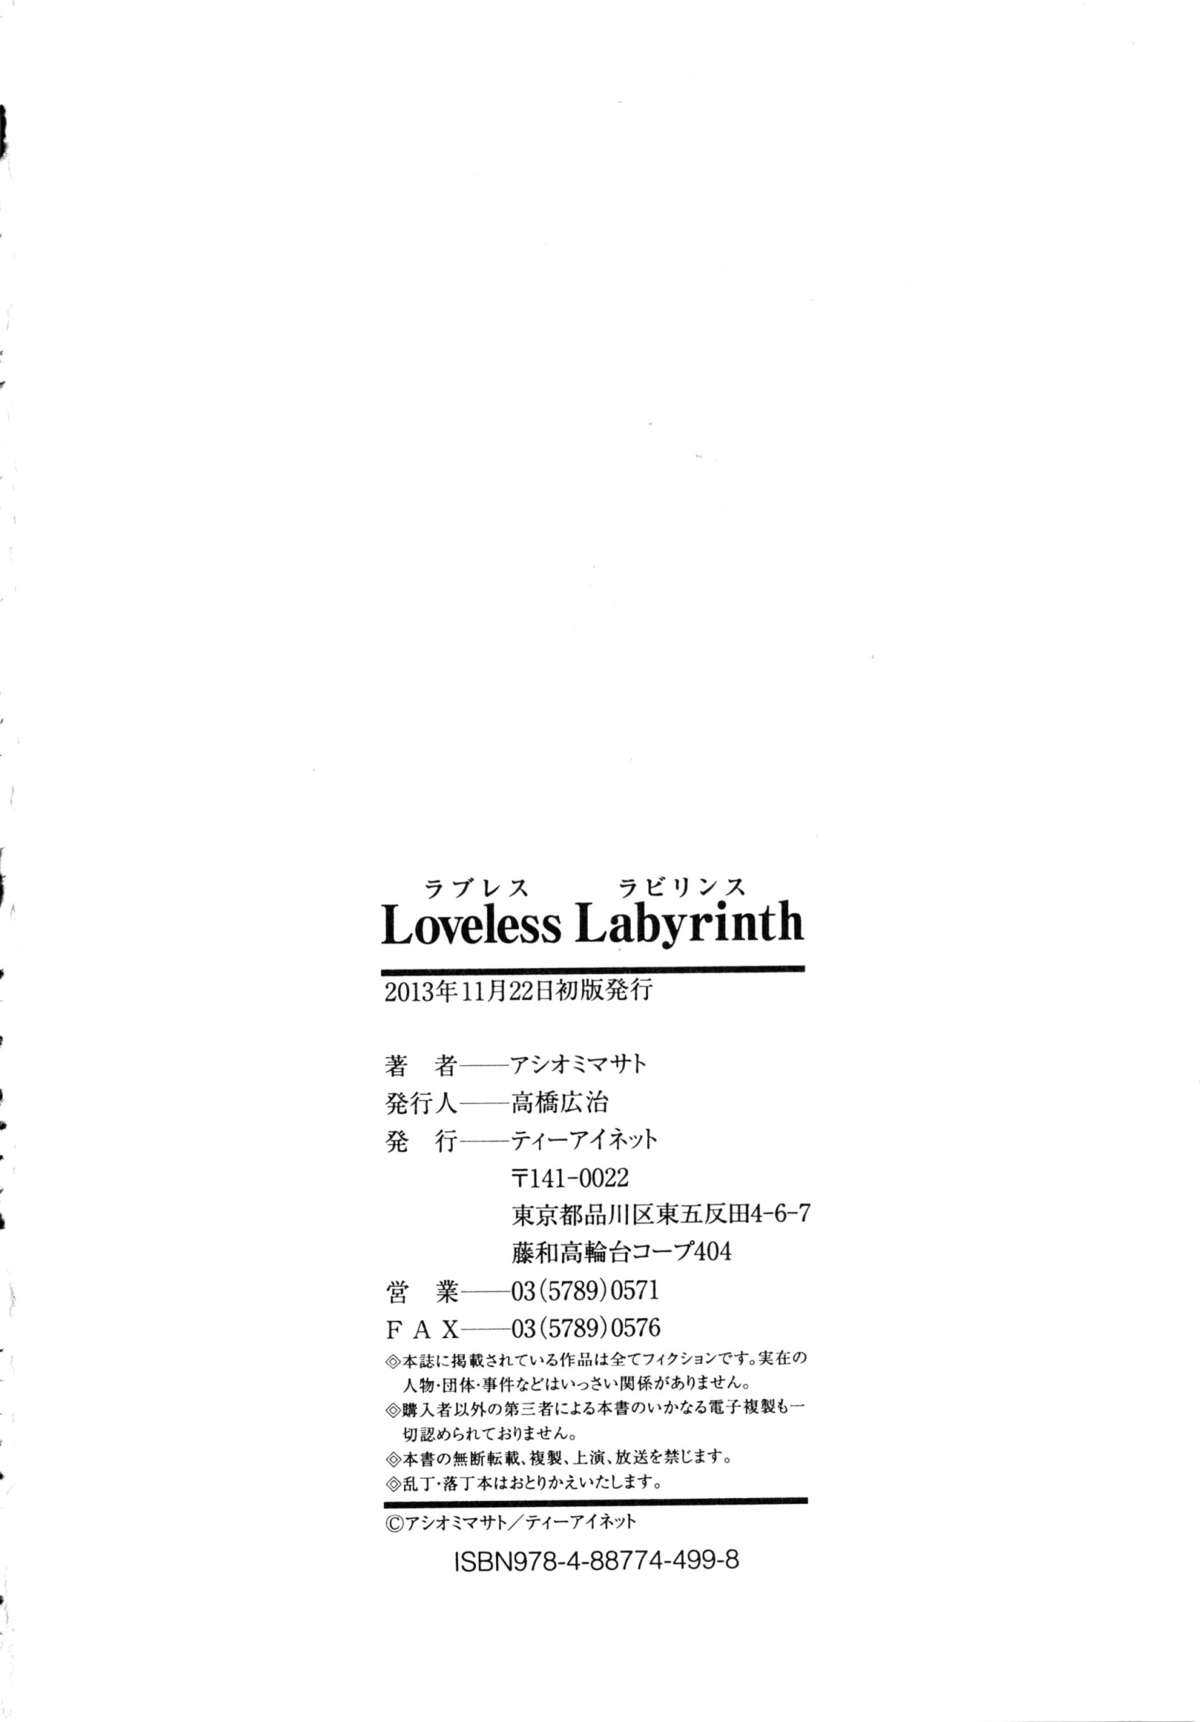 [アシオミマサト] Loveless Labyrinth + メッセージペーパー, 複製原画